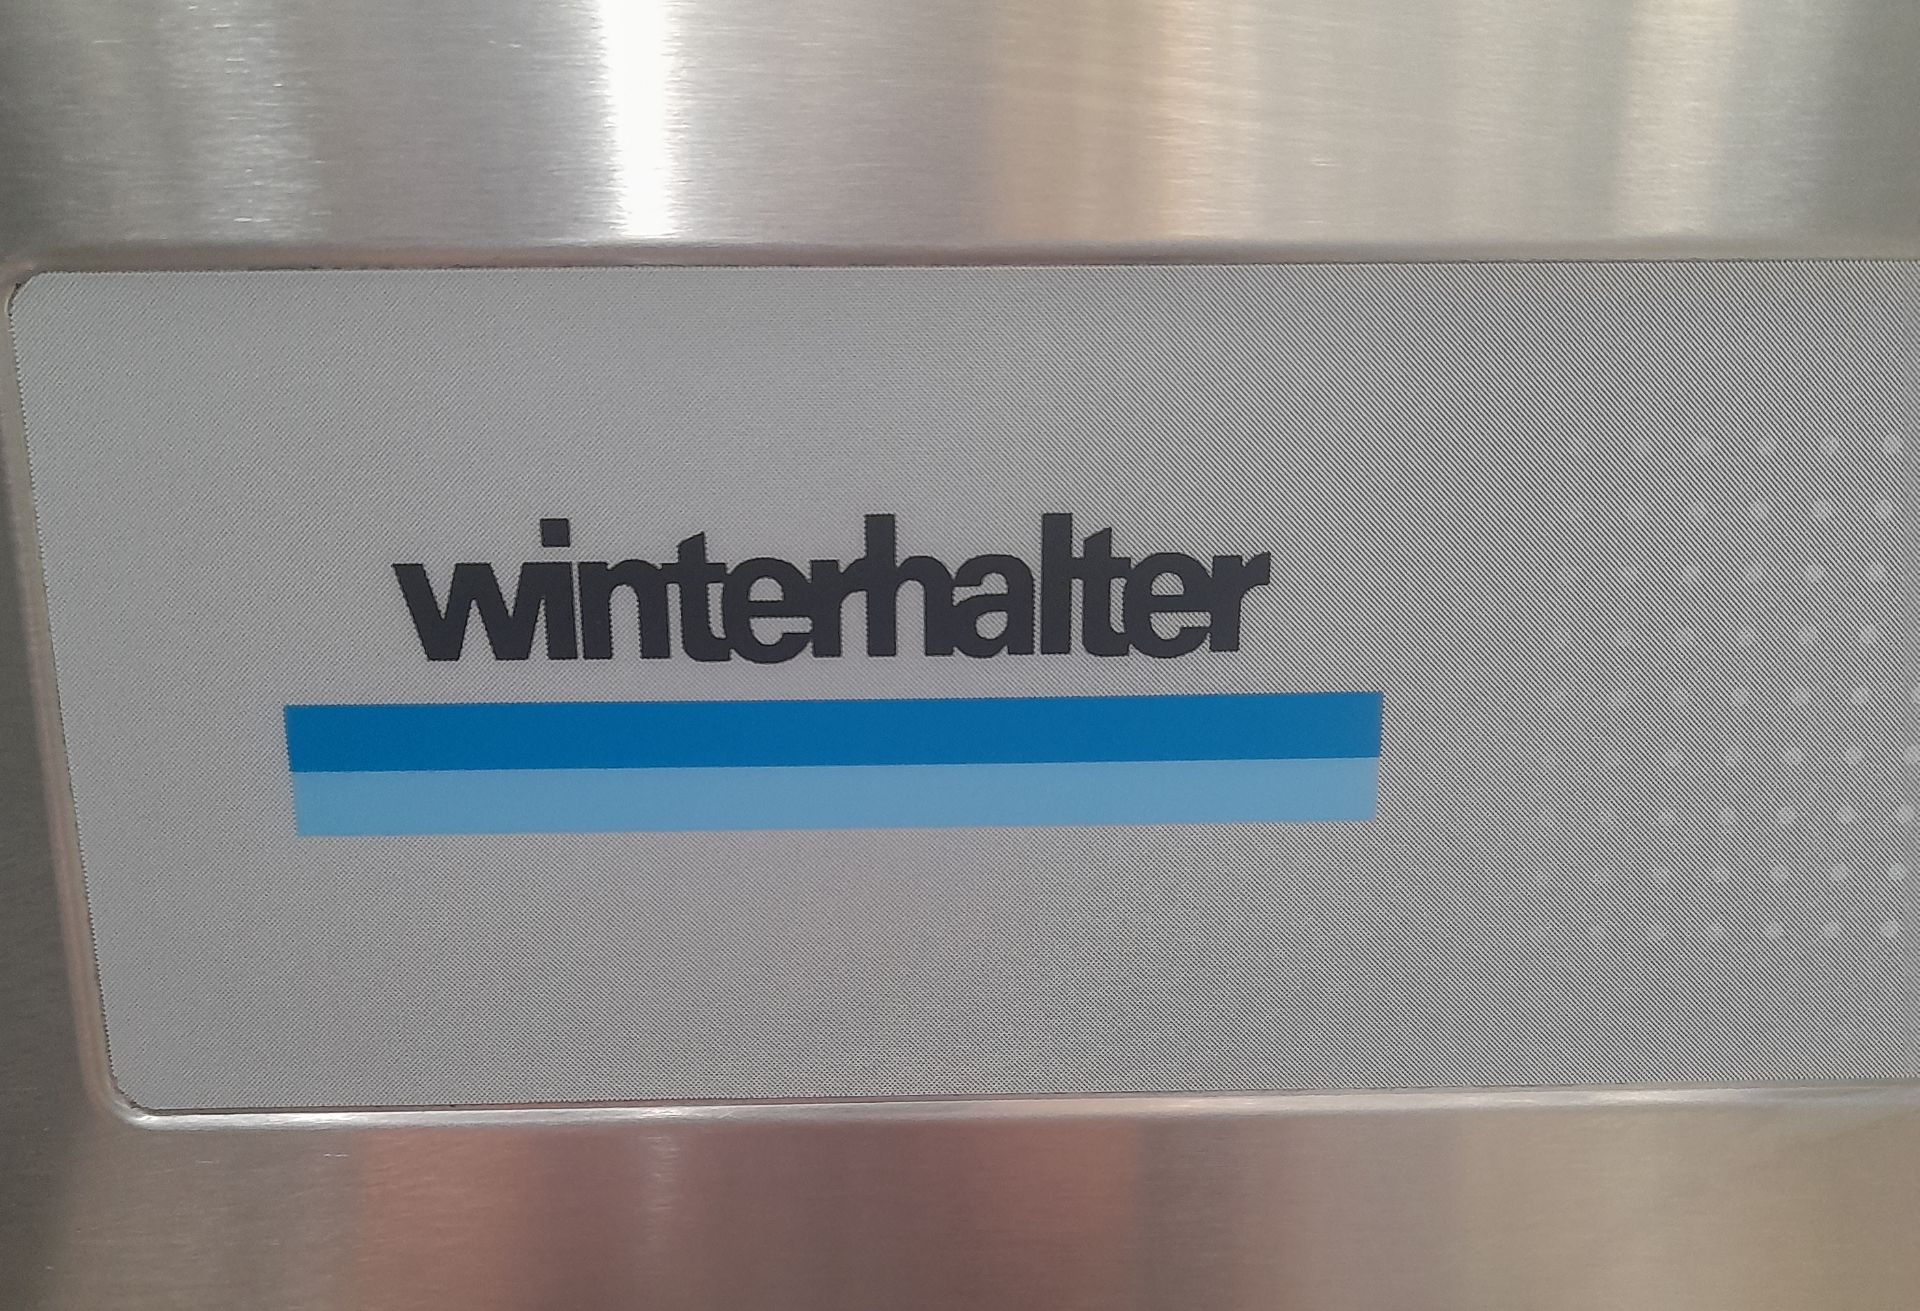 1 x Winterhalter PT-M Passthrough Dishwasher - Year 2018 - 3 Phase Power - Image 4 of 7